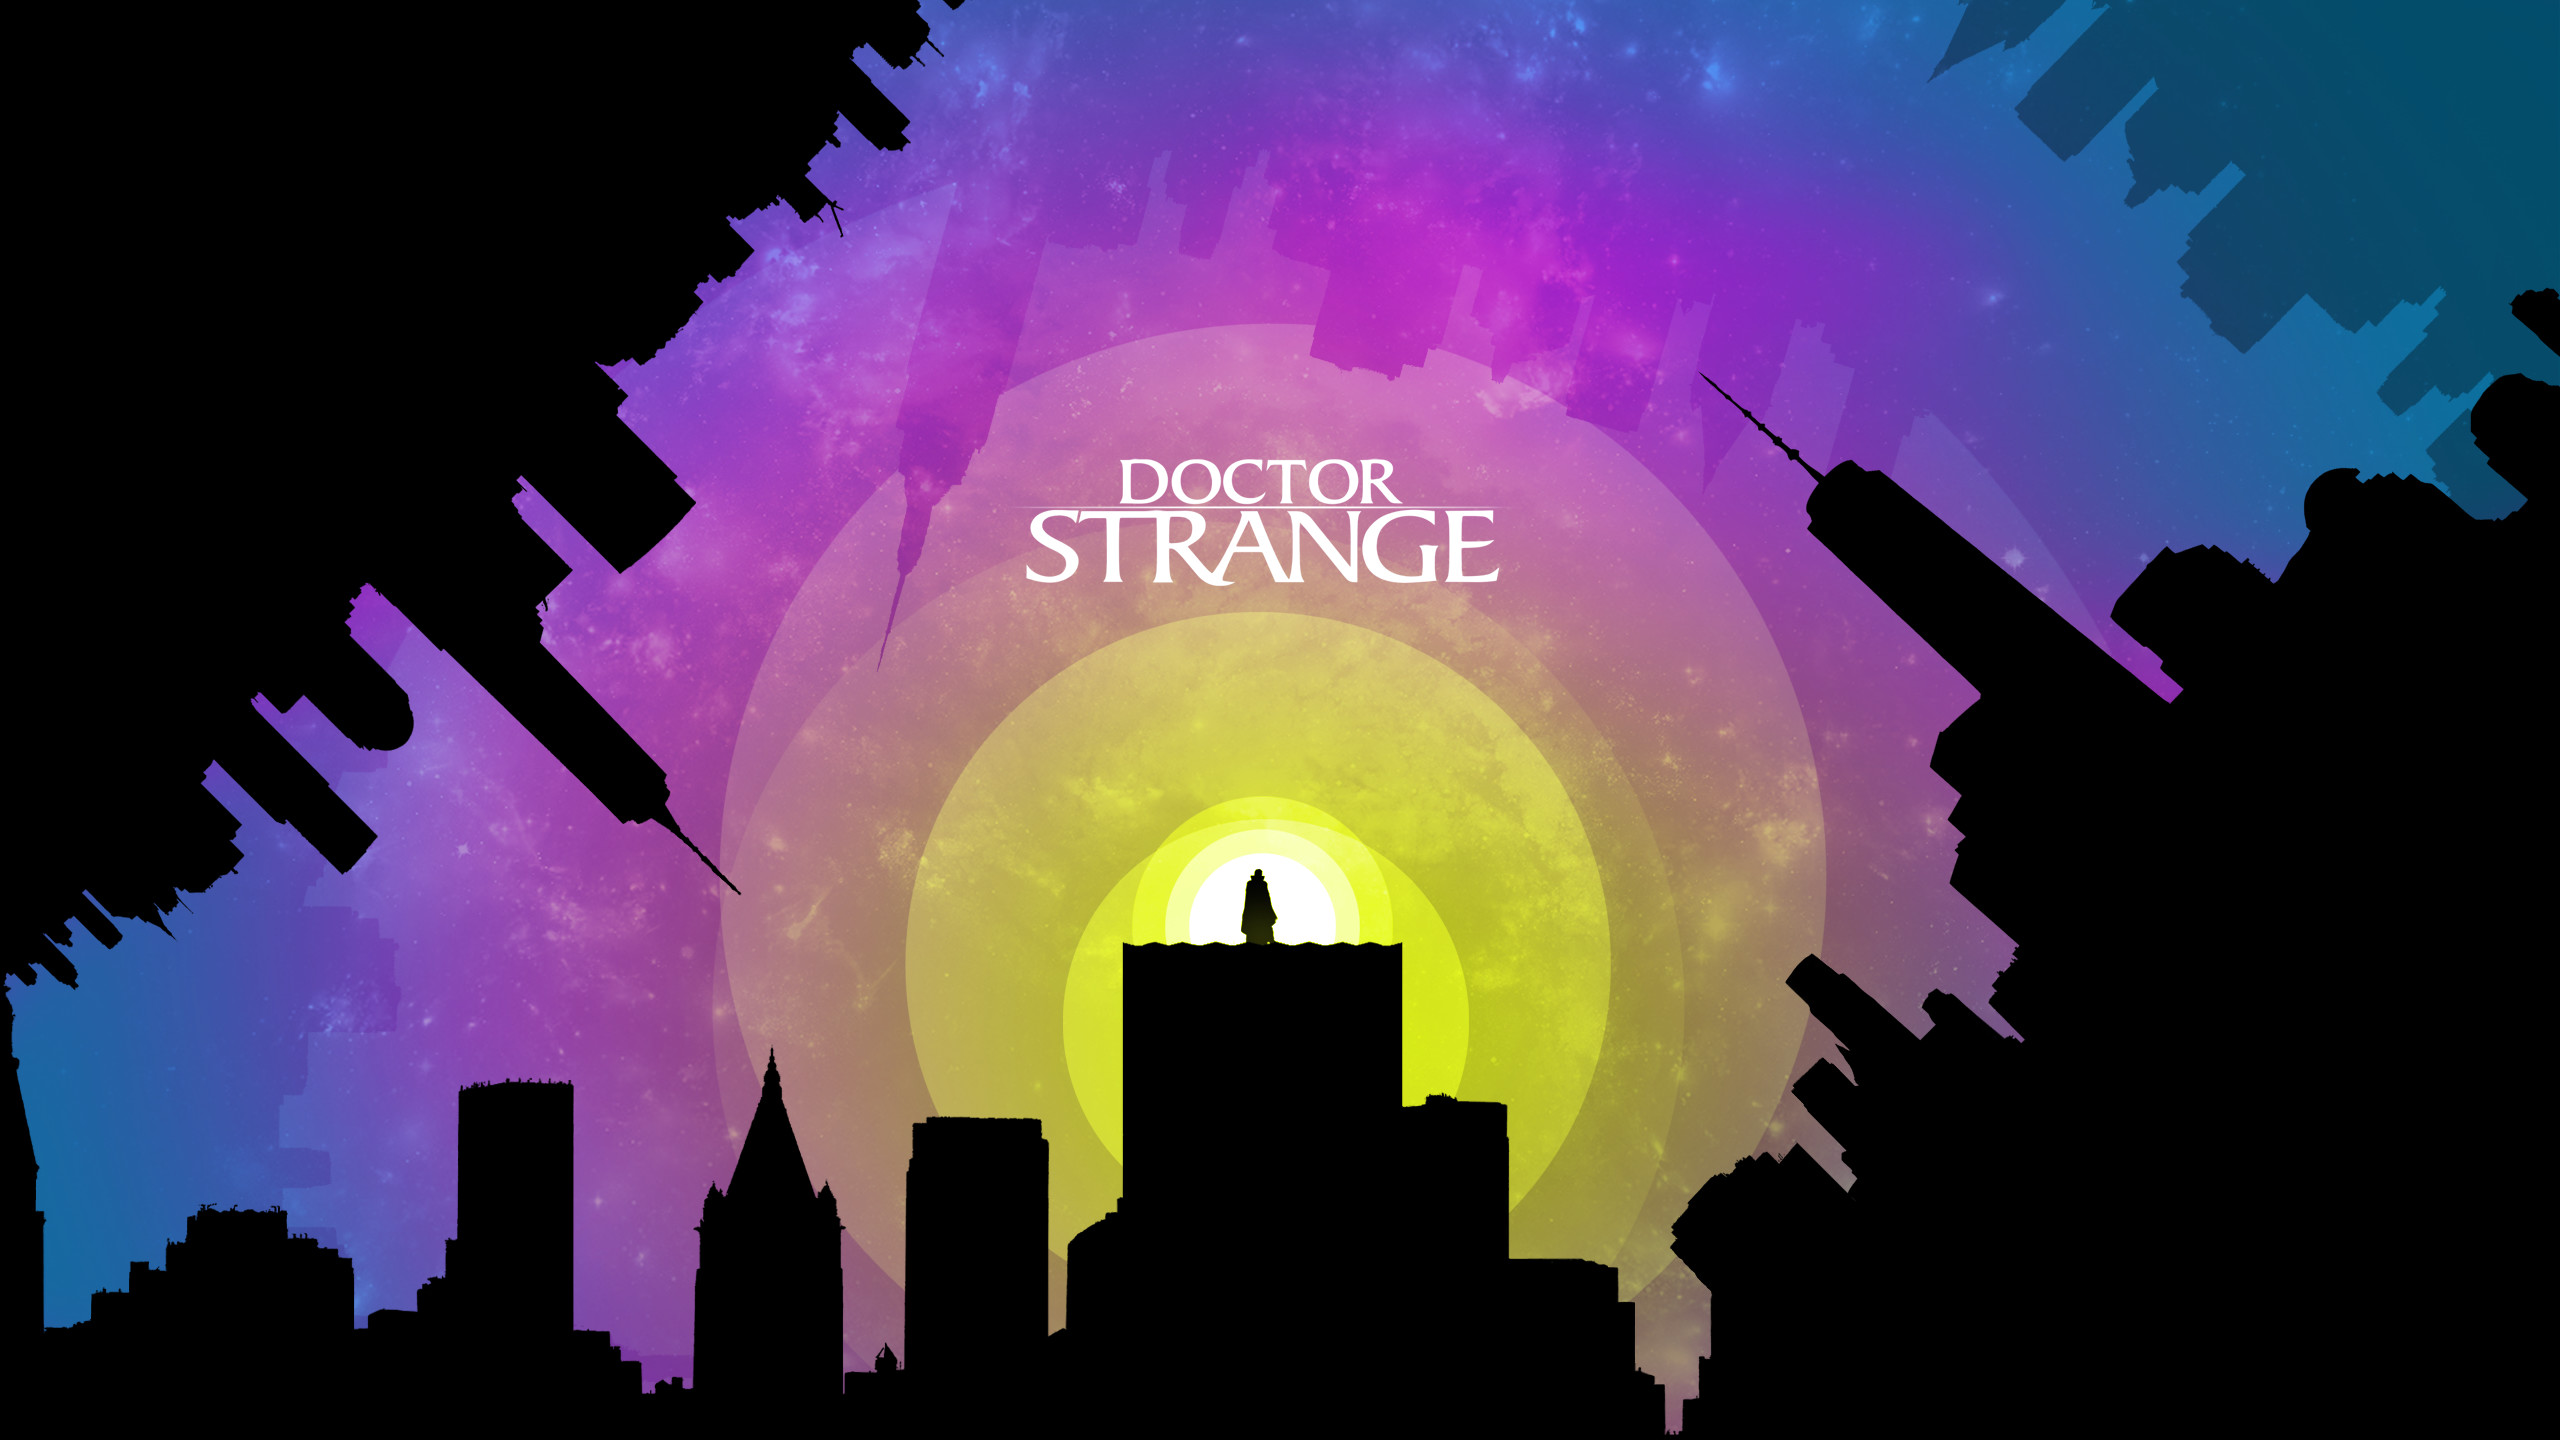 Life Is Strange - Doctor Strange Wallpaper For Pc , HD Wallpaper & Backgrounds